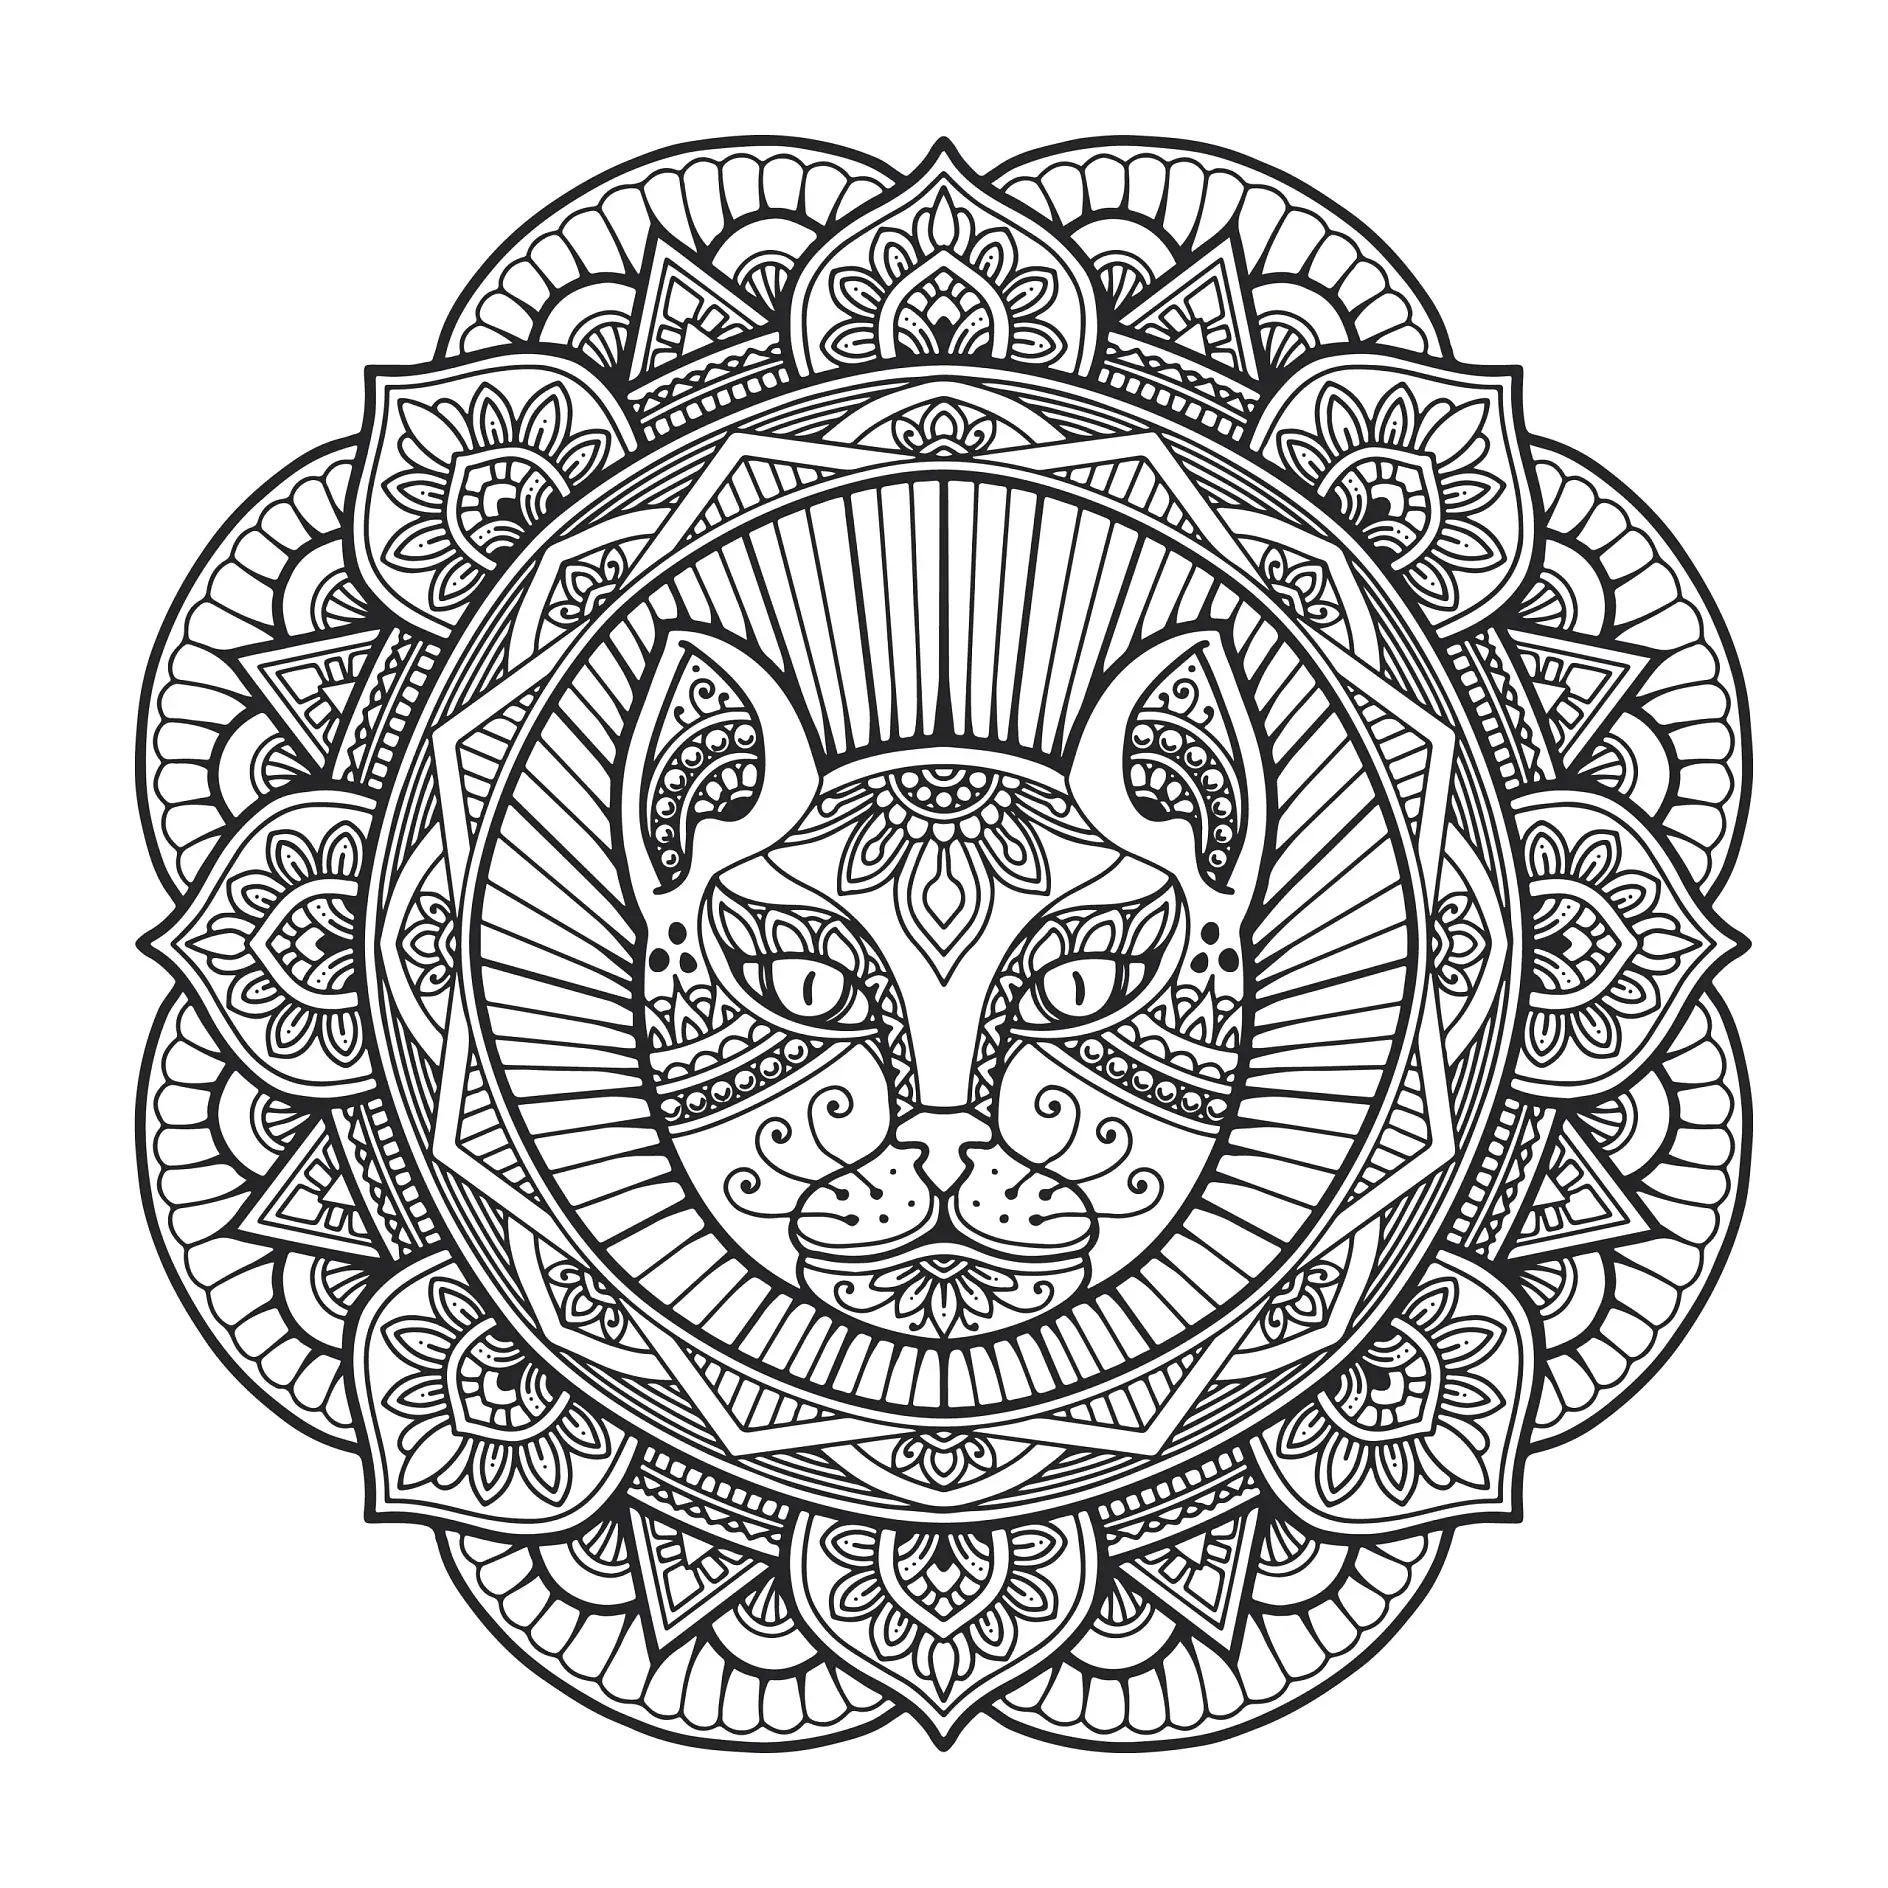 Ausmalbild Mandala mit Katze und symmetrischen Mustern